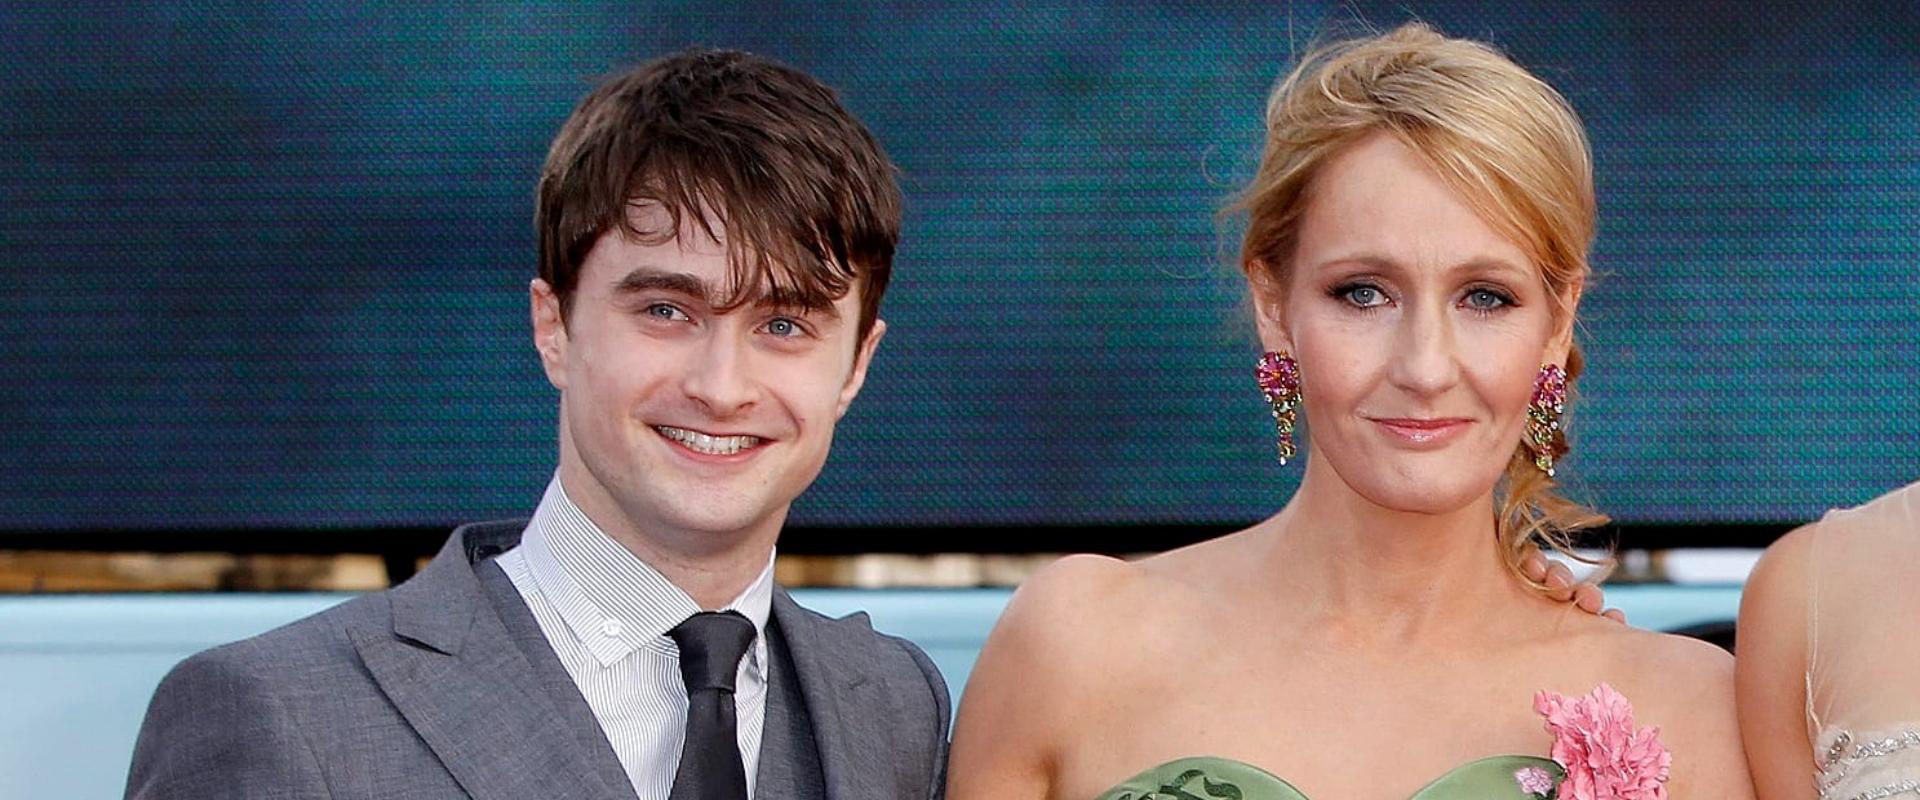 Szétszedik a Harry Potter főszereplőjét, miután beleállt J.K. Rowlingba